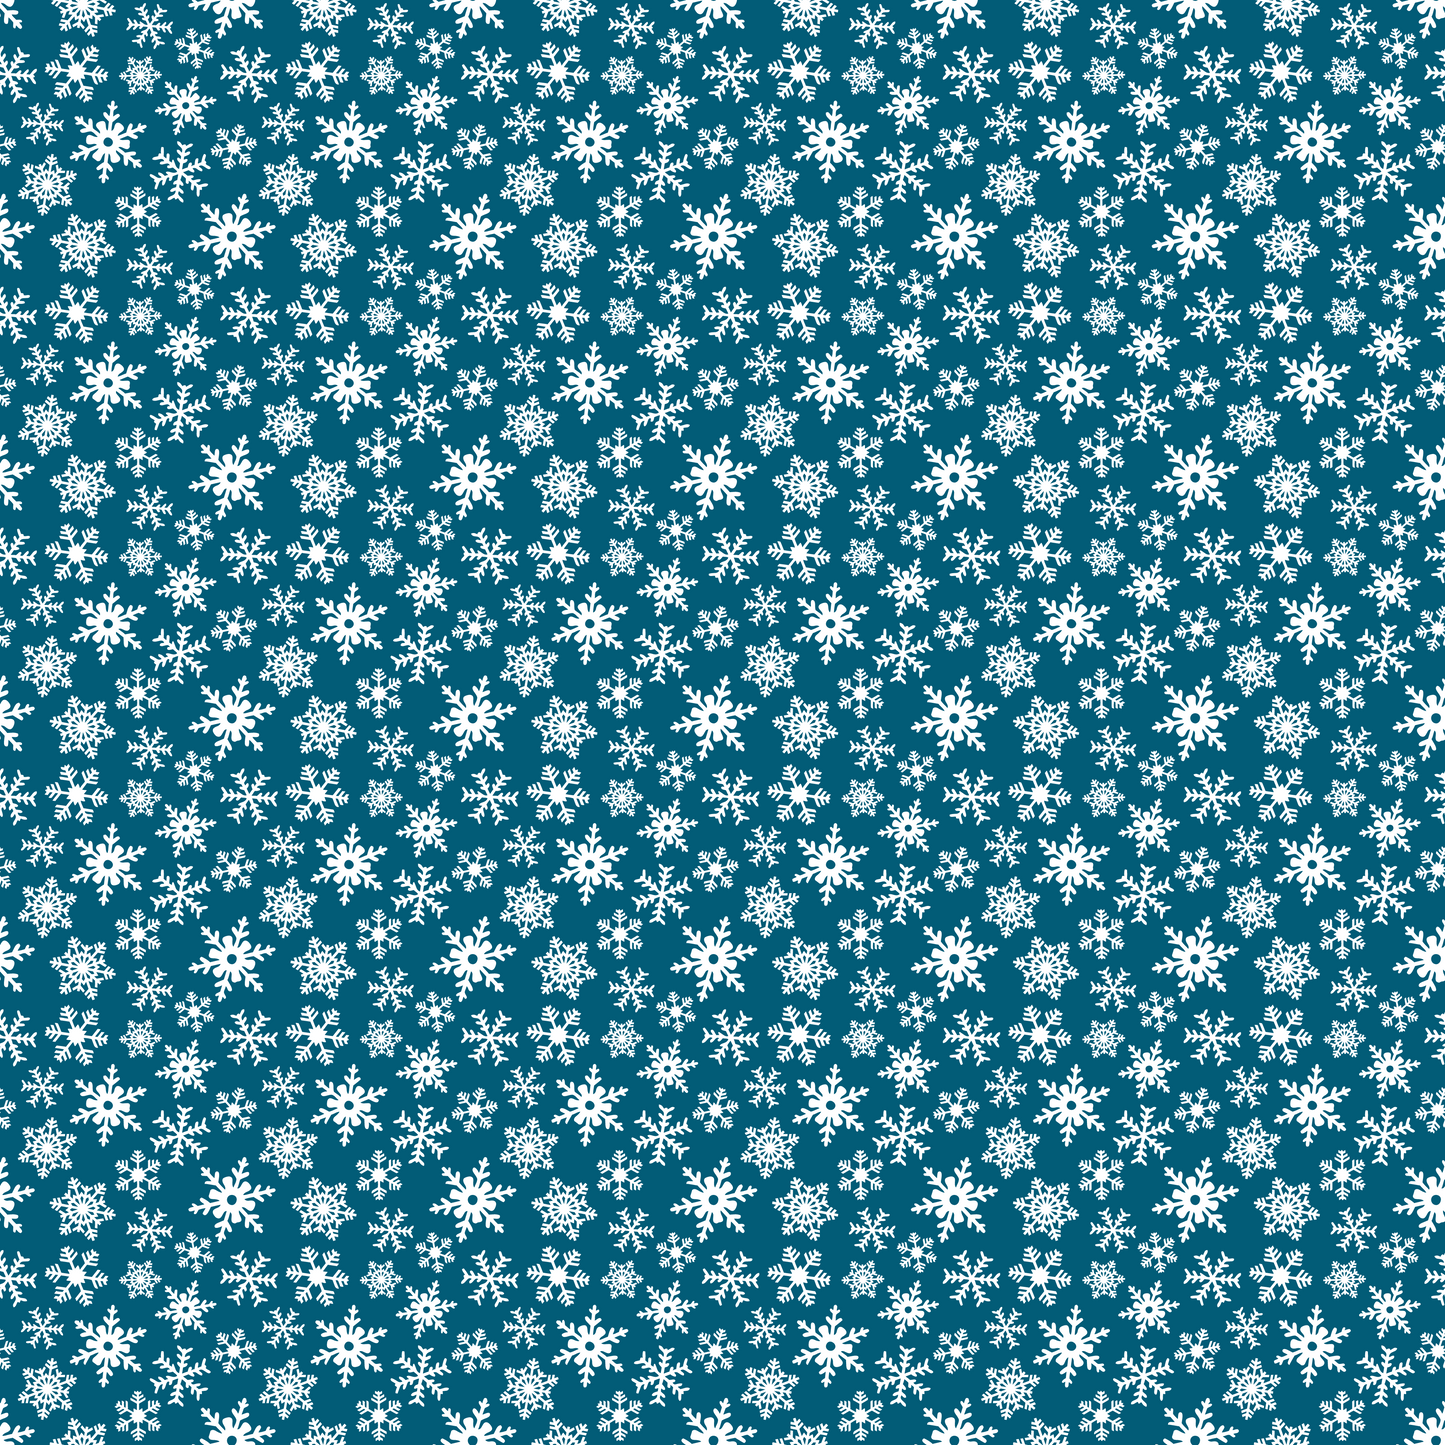 Plaisirs d'hiver - Flocons de neige sur fond bleu foncé 007